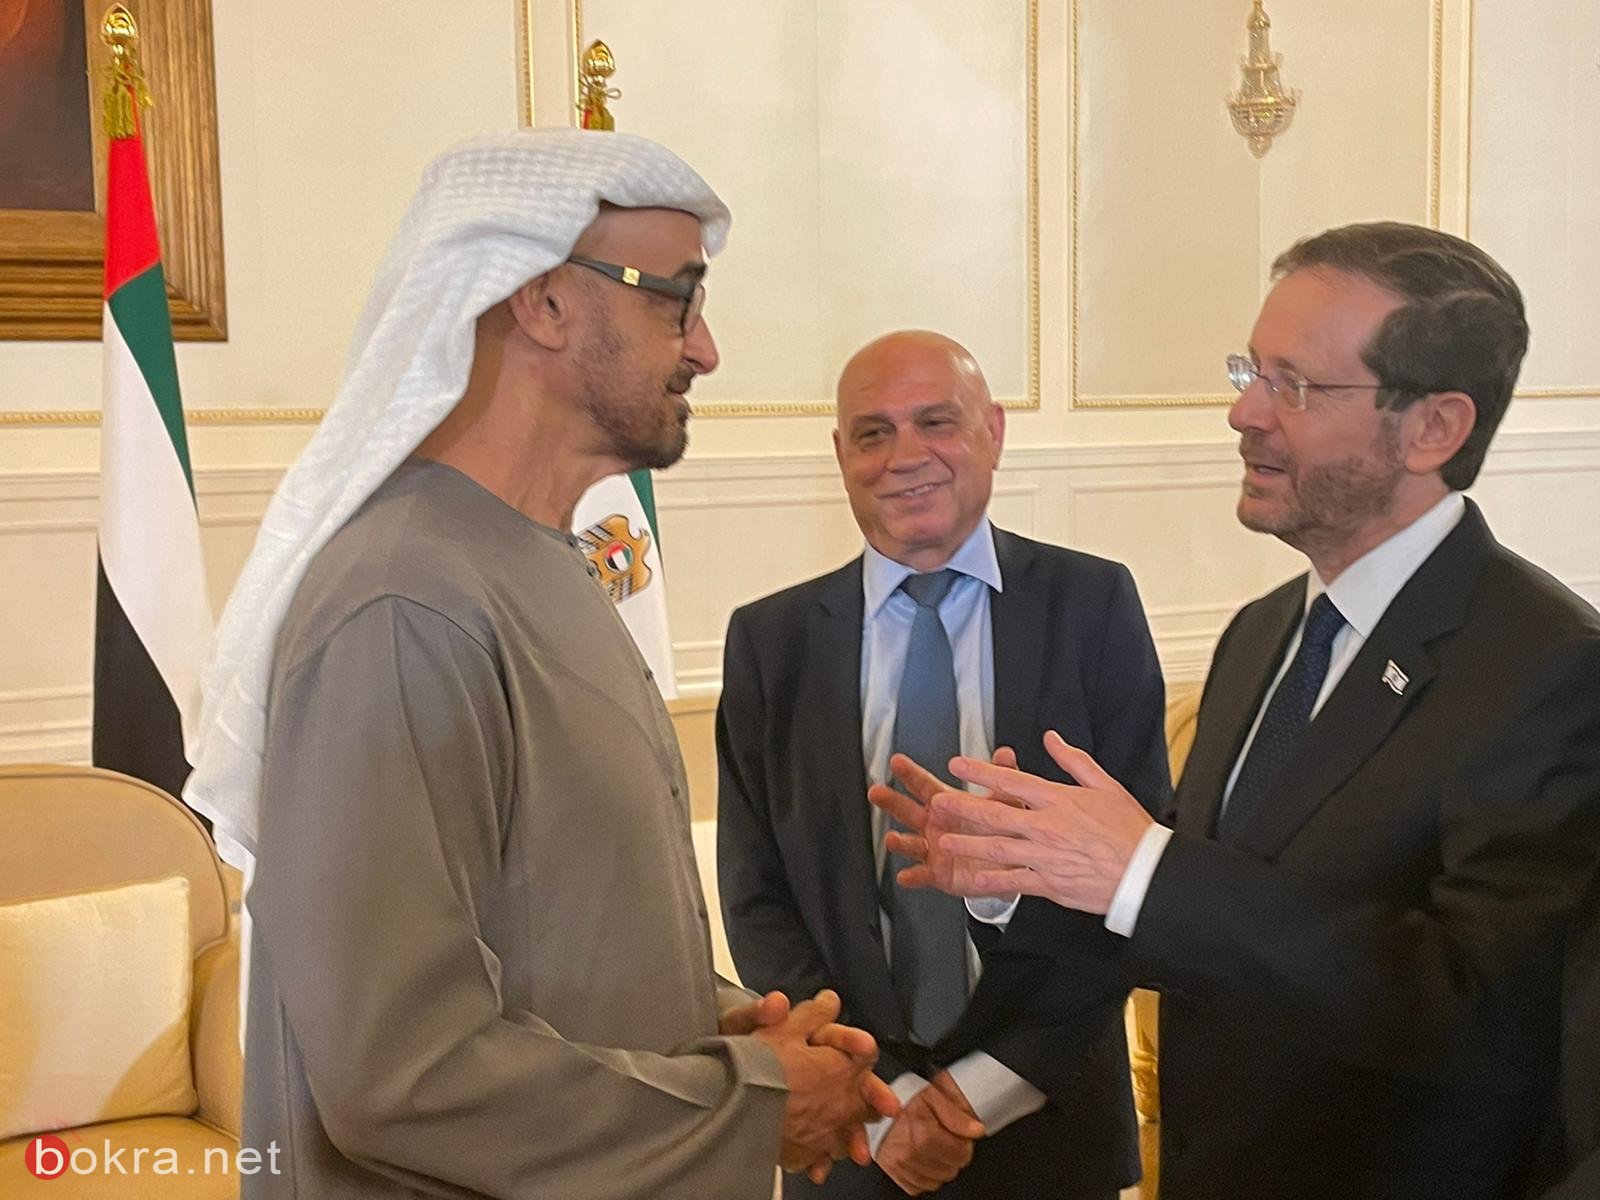 رئيس الدولة والوزيران فريج وهندل يصلون أبو ظبي لتقديم واجب العزاء-1